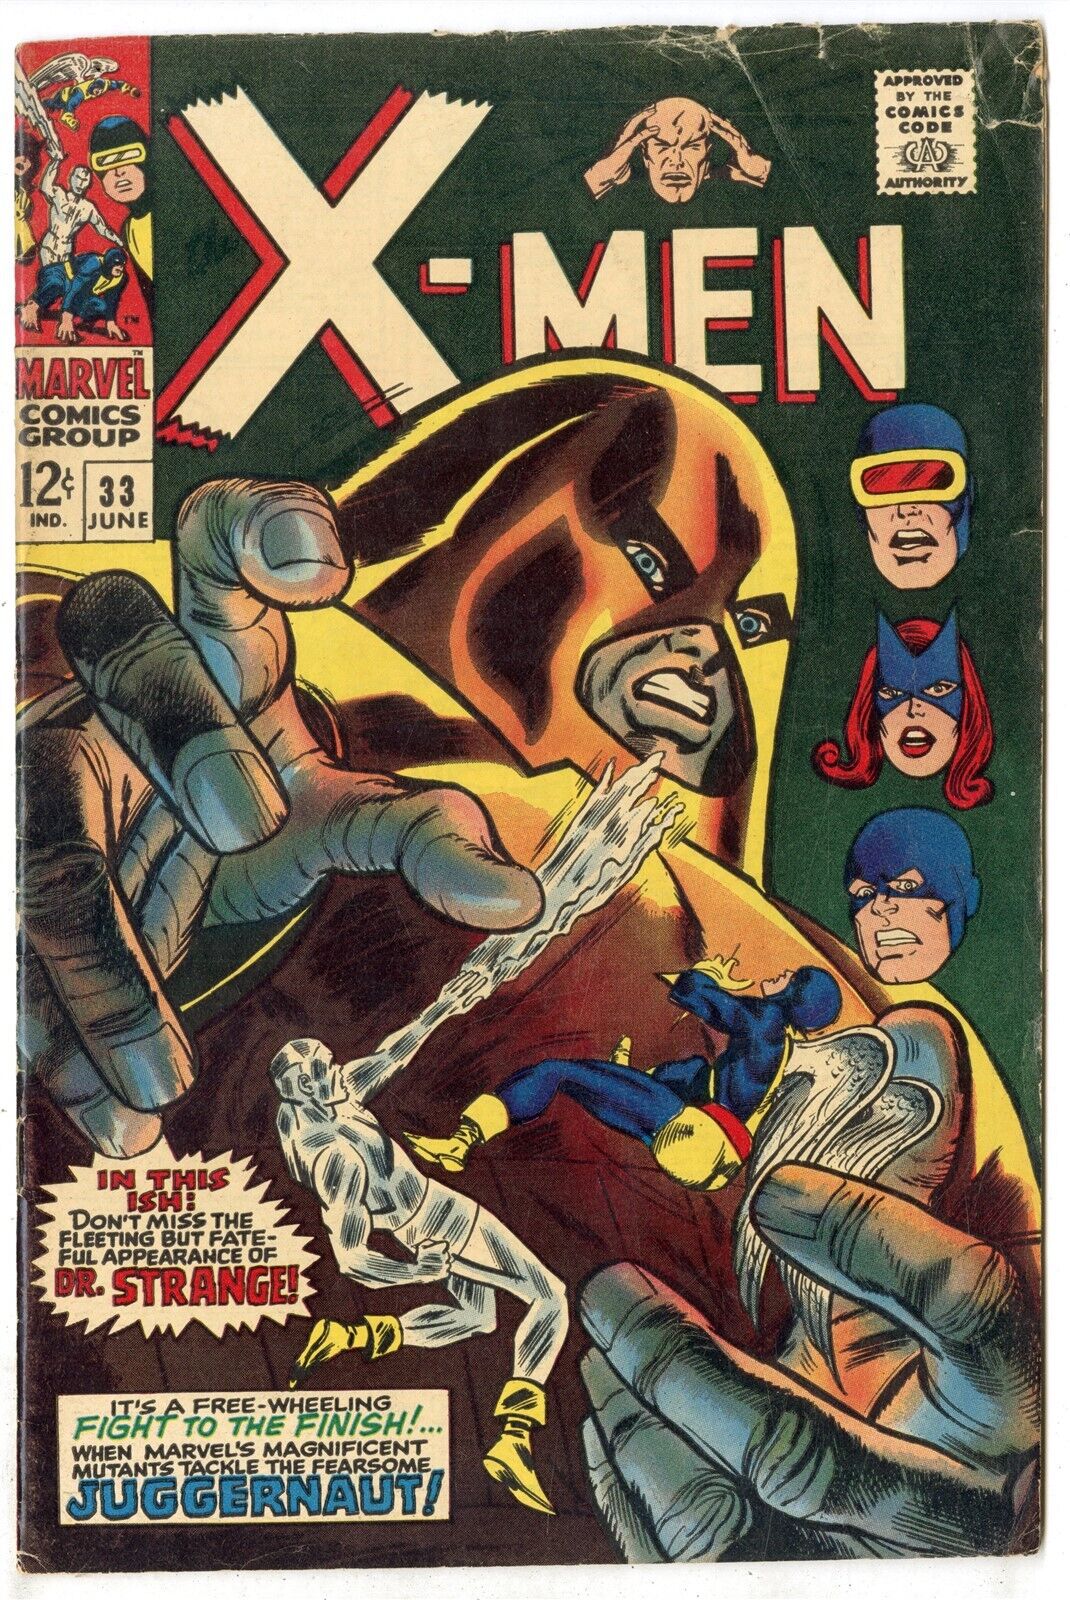 XMen 33 G 25 owwhite pages  Juggernaut  Marvel  1967  No Reserve